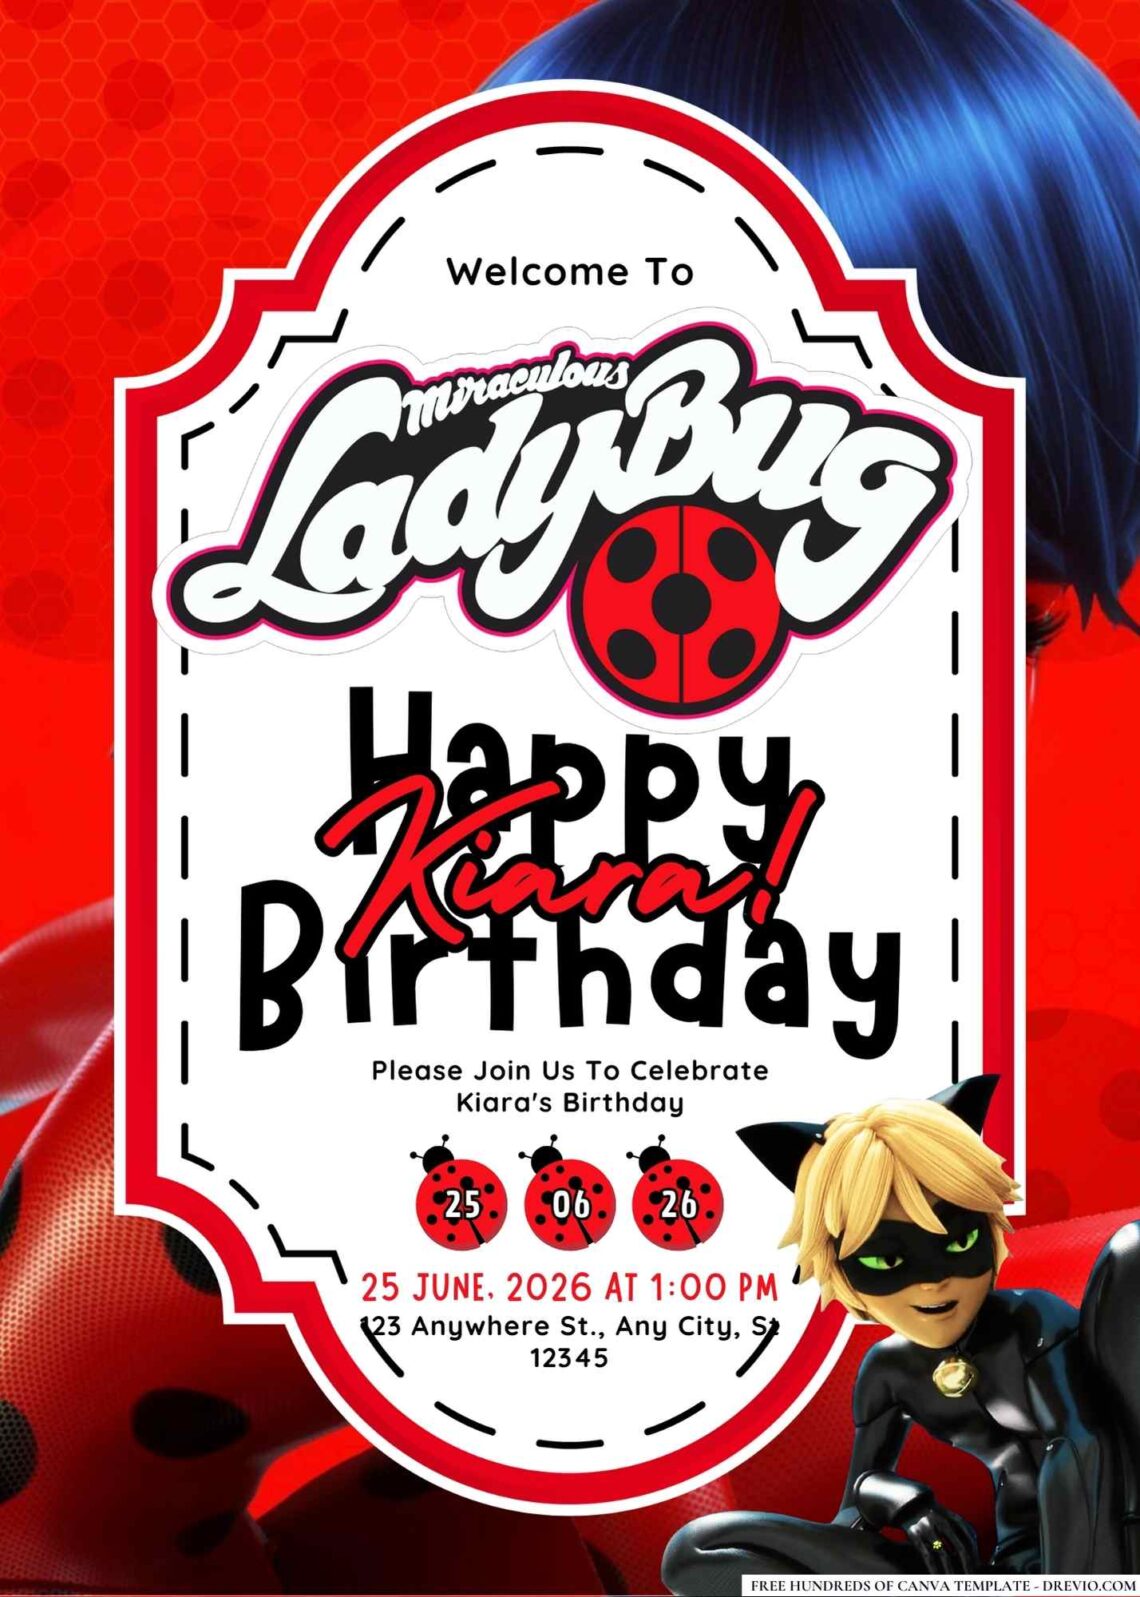 FREE Editable Ladybug Birthday Invitations